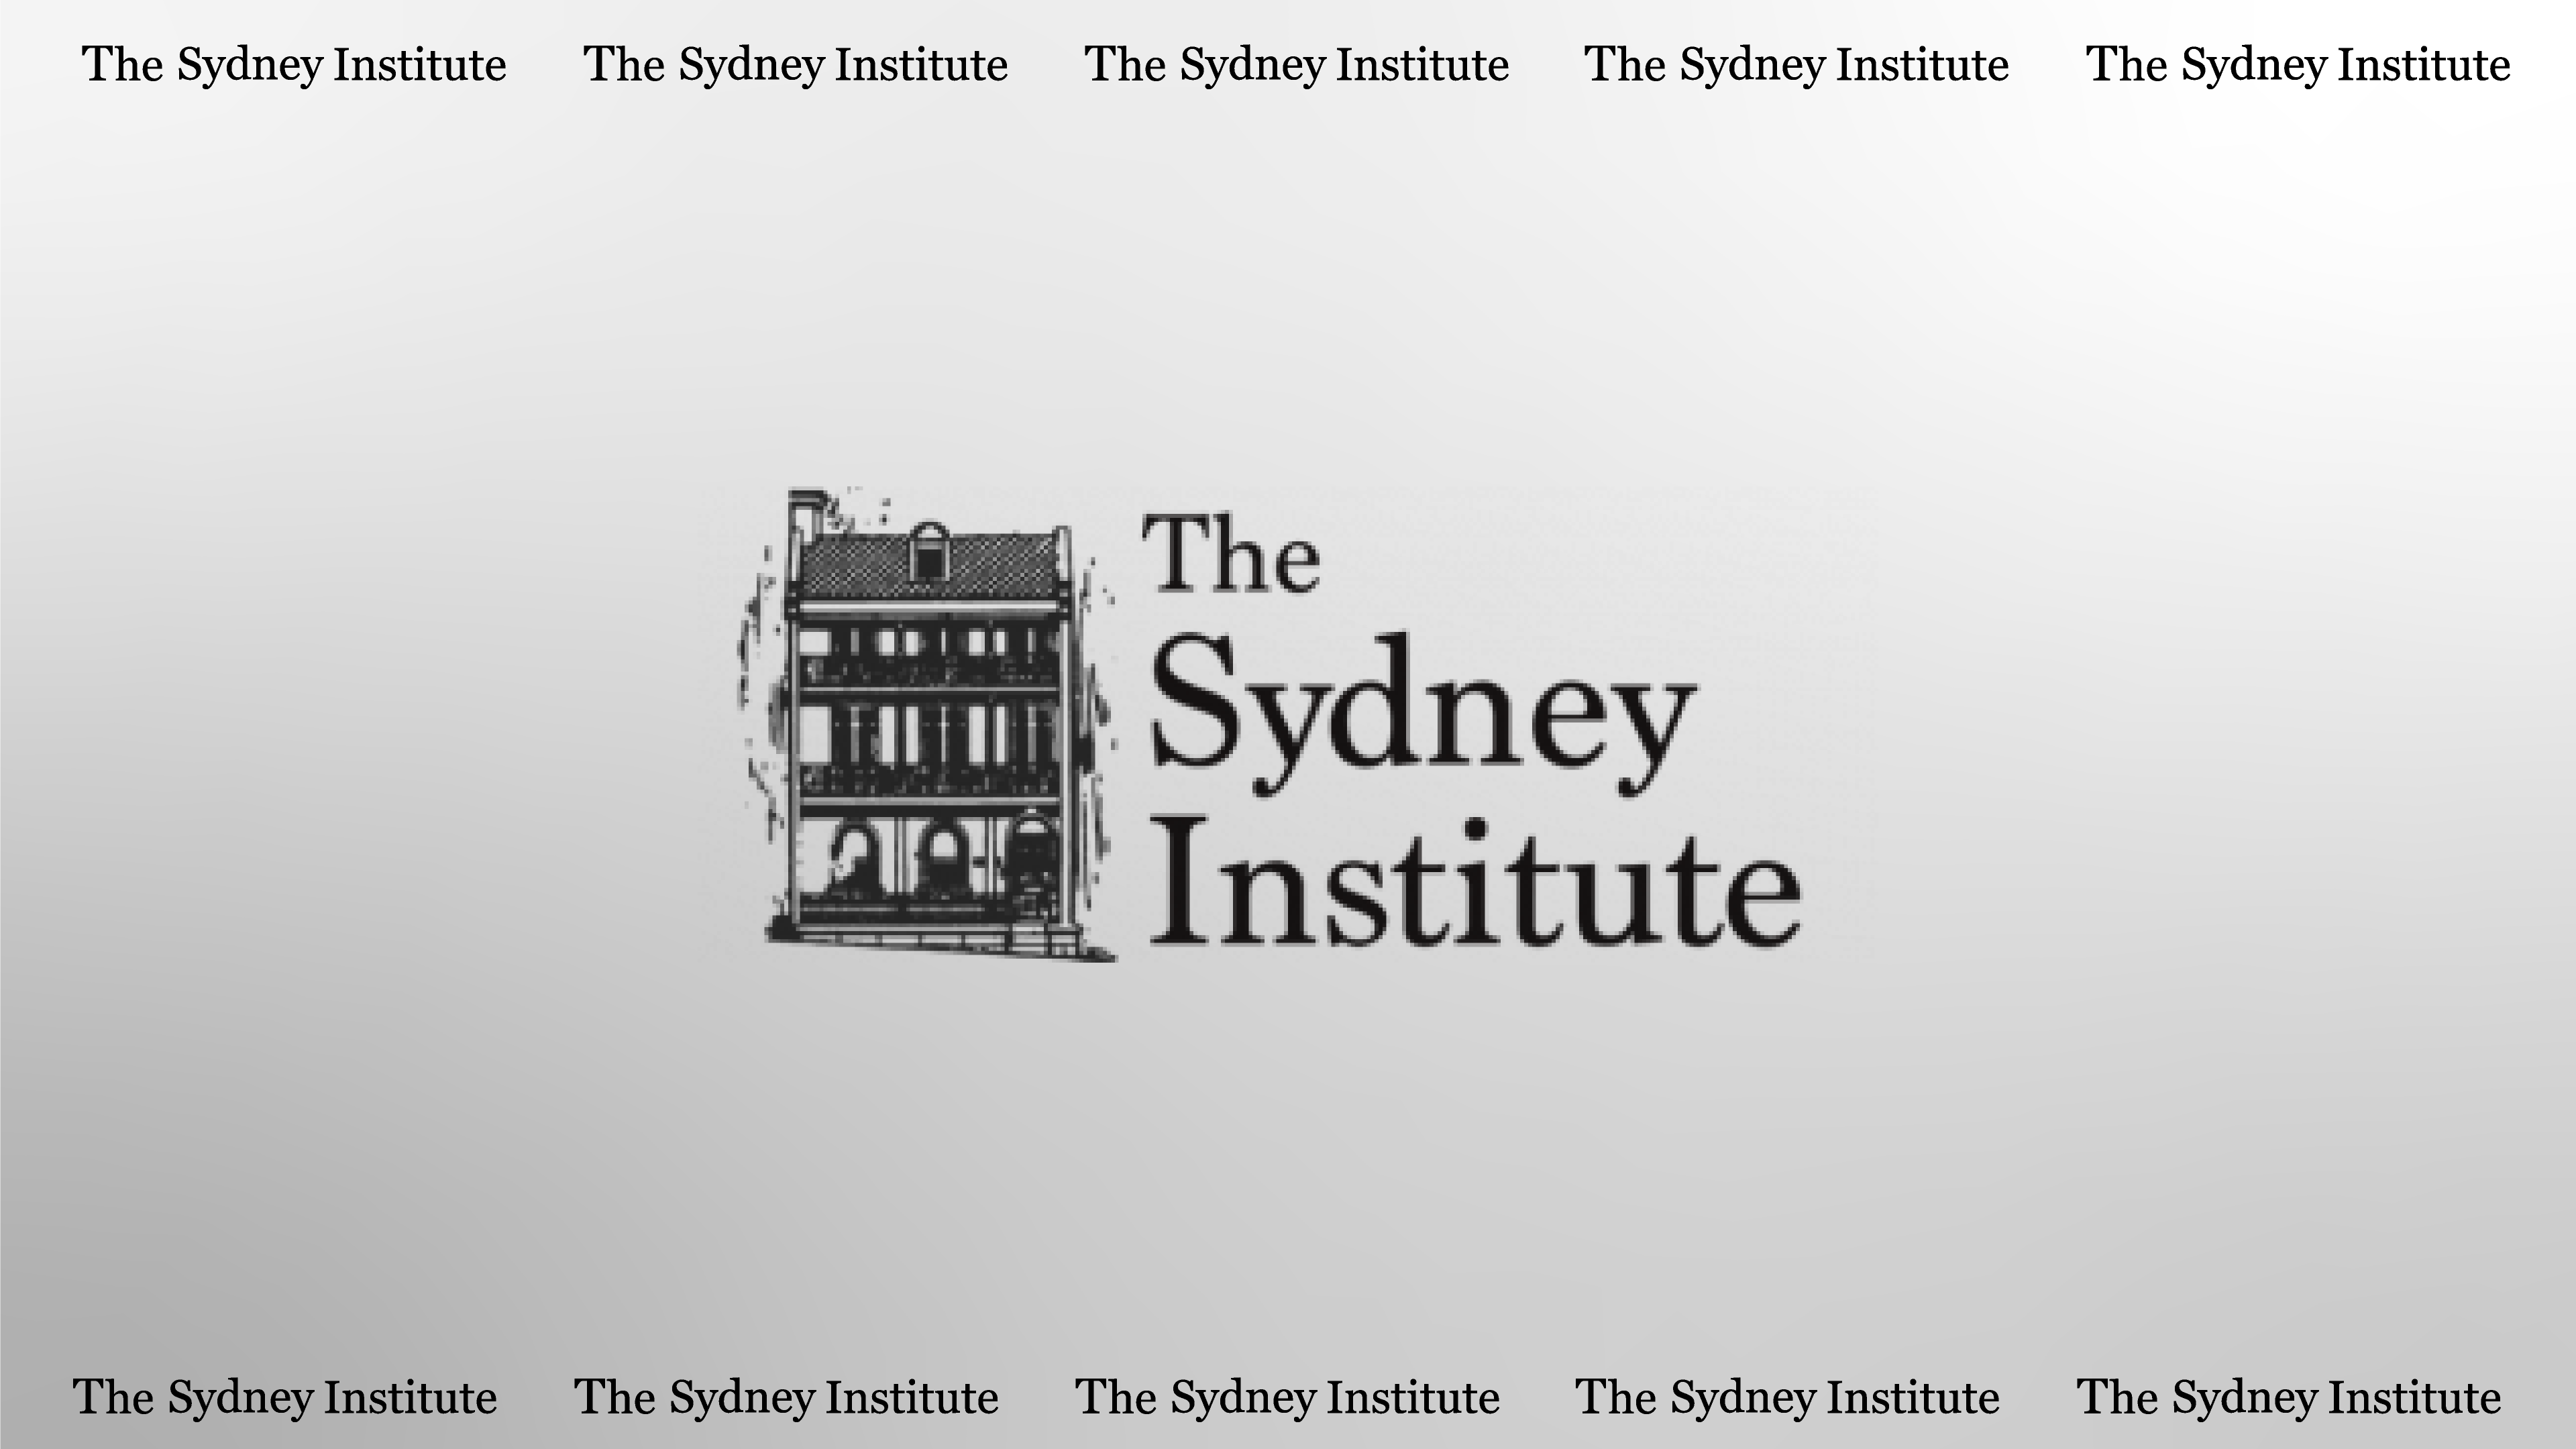 The Sydney Institute